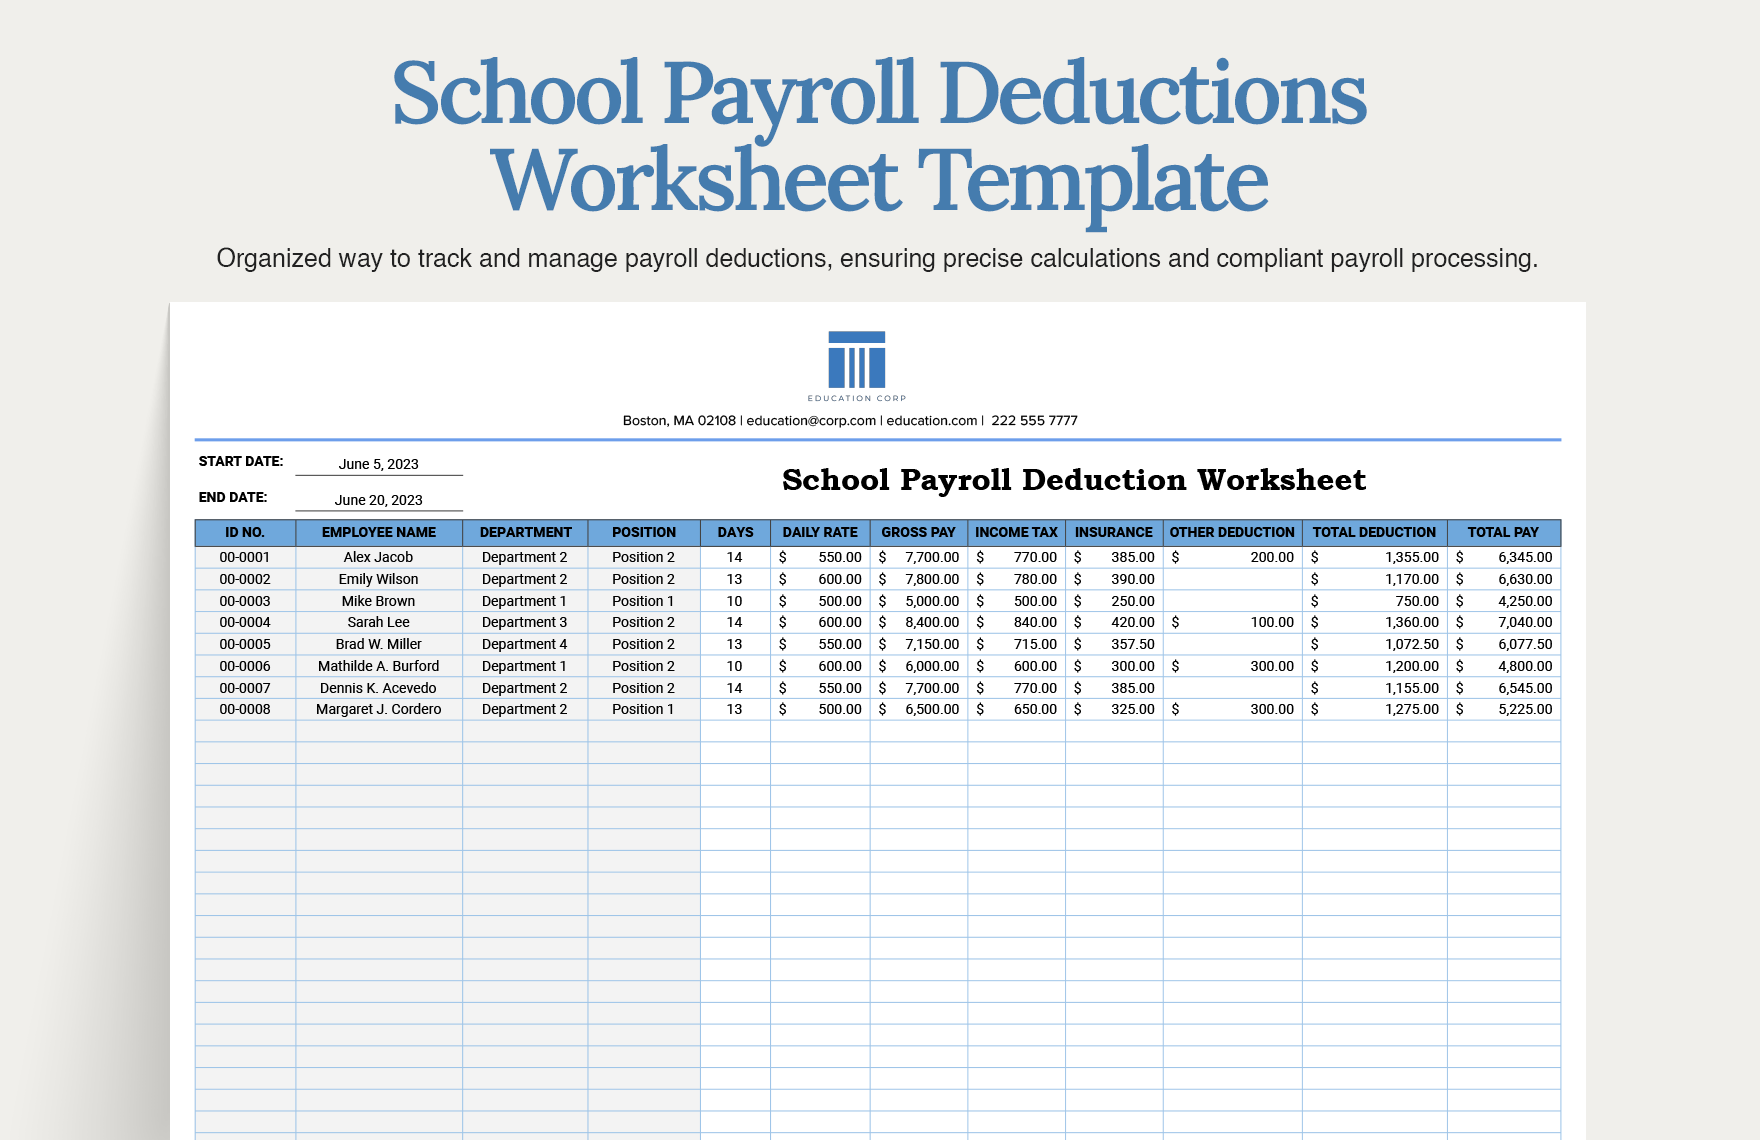 School Payroll Deductions Worksheet Template